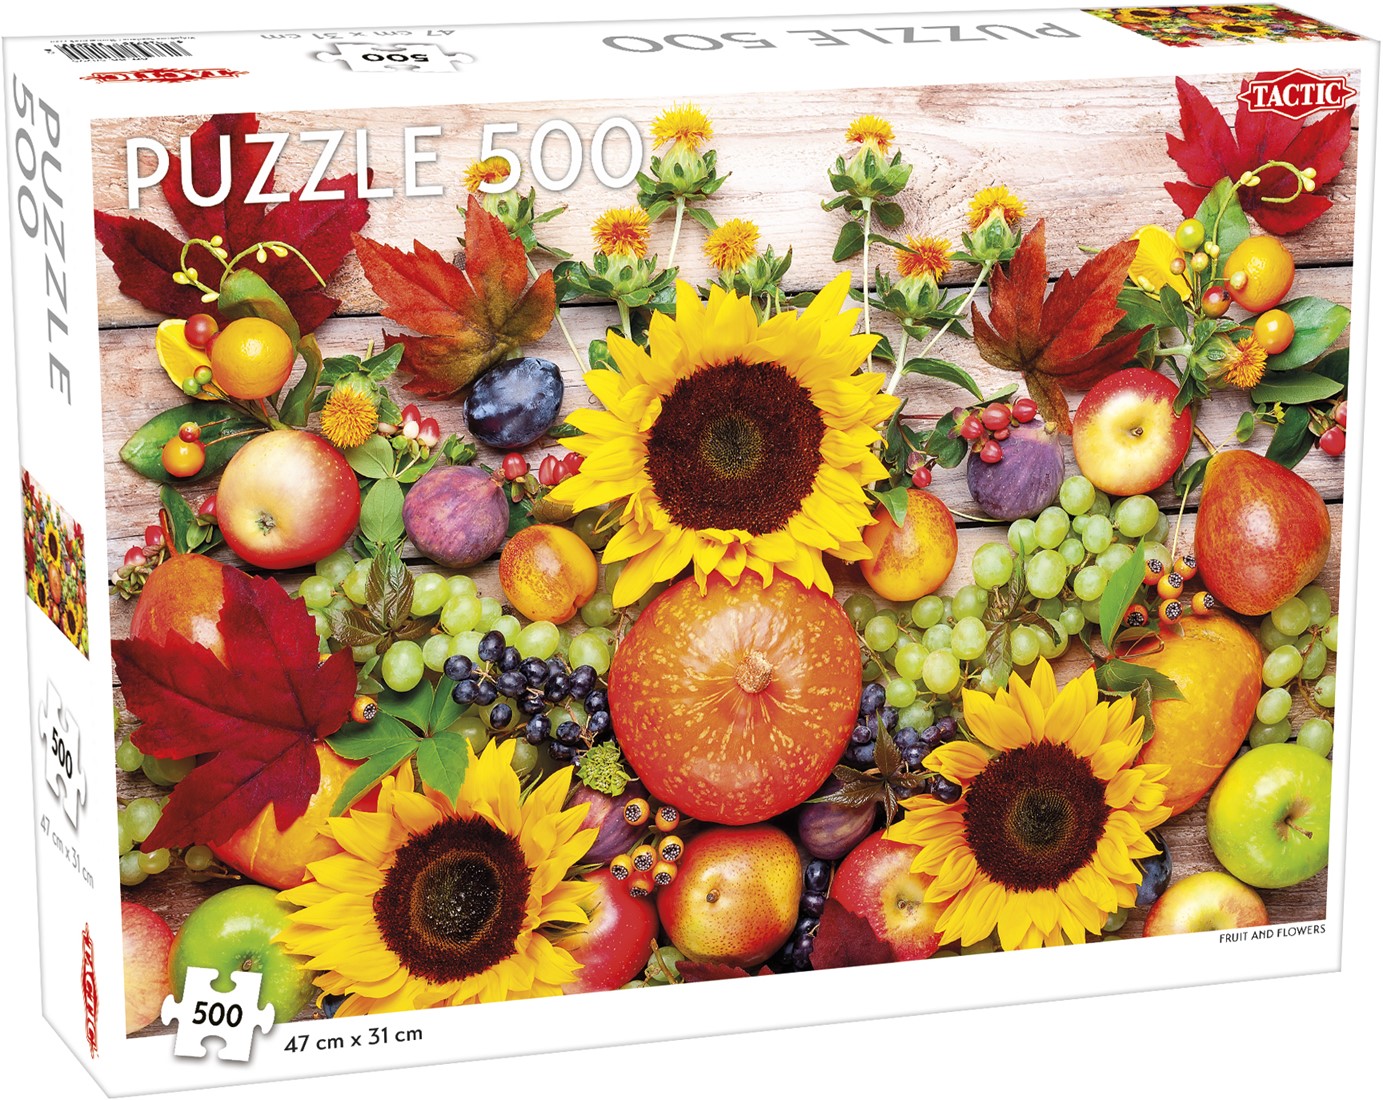 Schat vriendelijke groet Dempsey Tactic Puzzel Fruit and Flowers 500 Stukjes bij Planet Happy